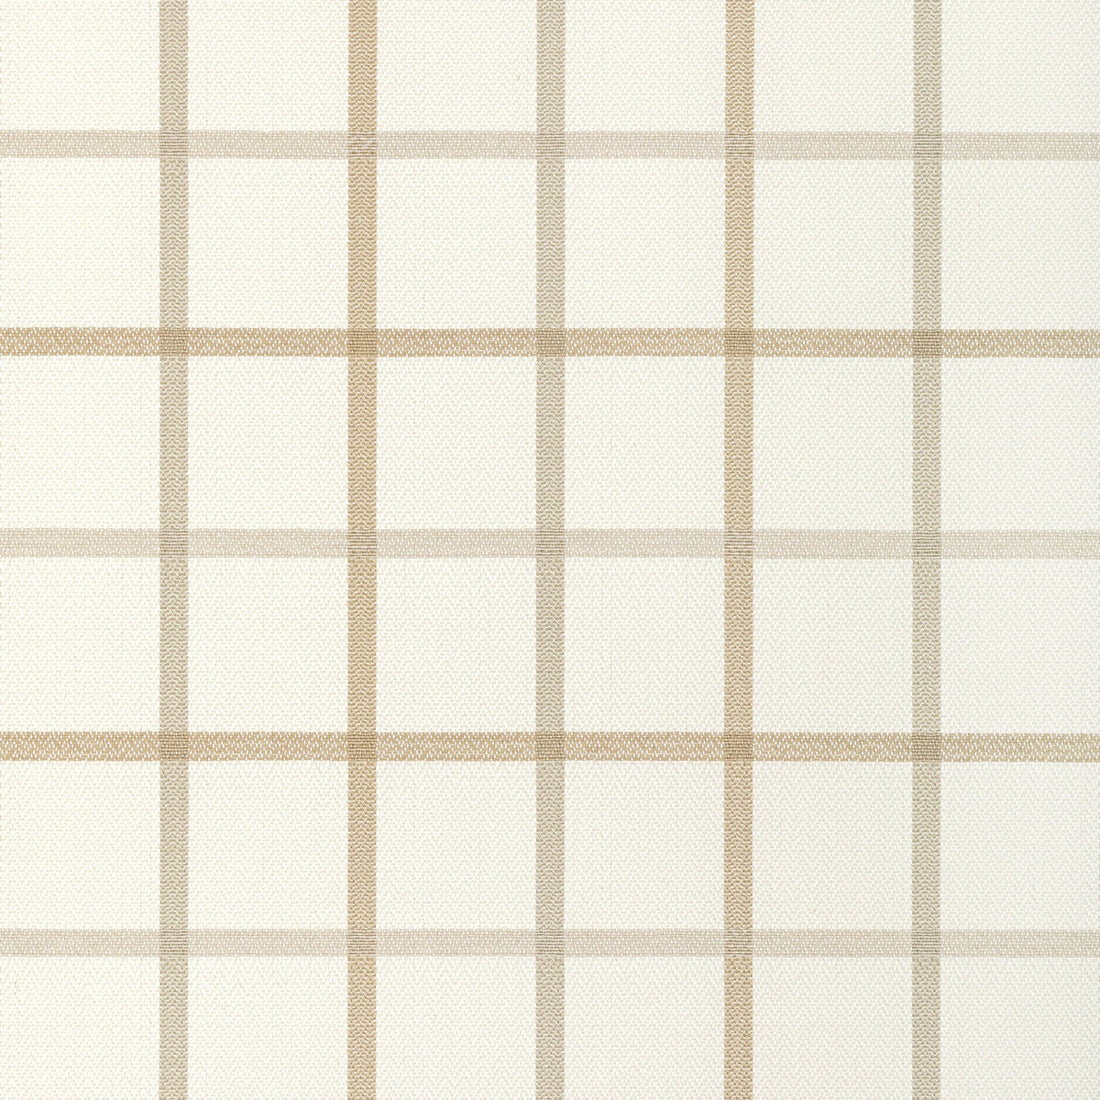 Kravet Basics fabric in 36023-16 color - pattern 36023.16.0 - by Kravet Basics